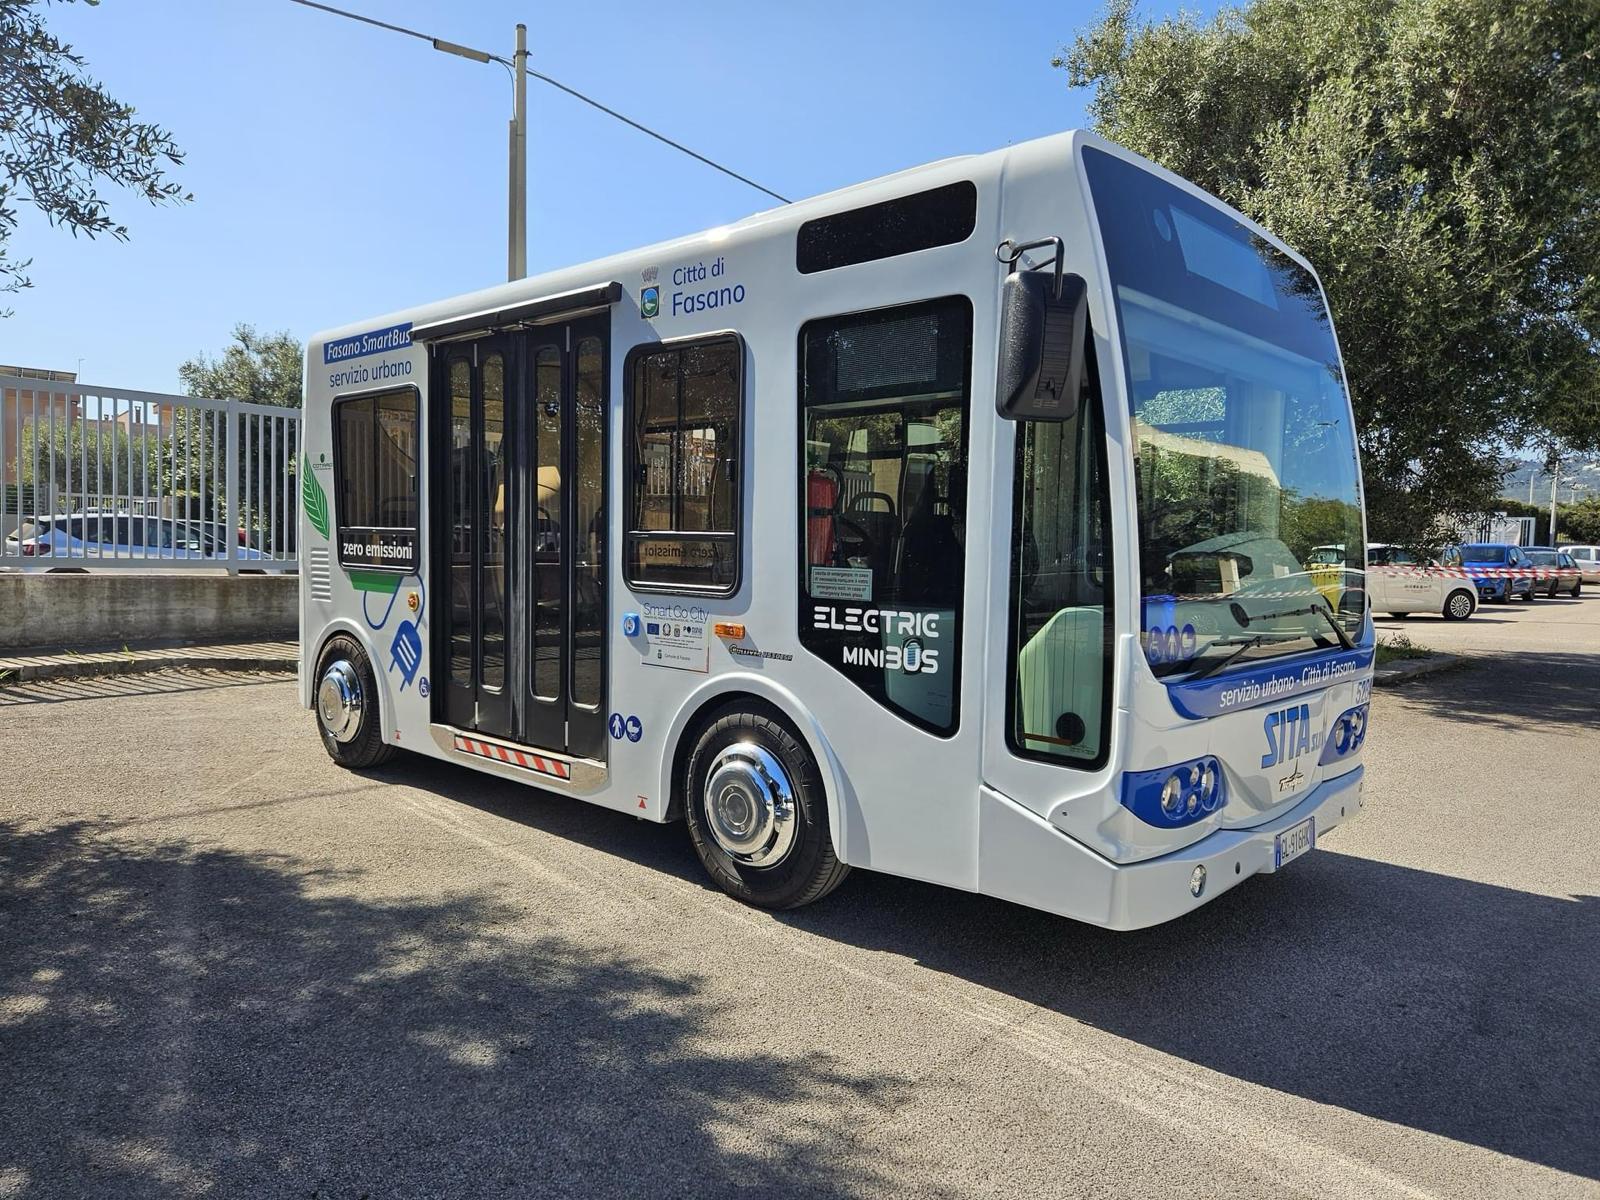 Galleria Trasporti, inaugurati gli 8 nuovi autobus a basse emissioni inquinanti dei Comuni di Fasano e Trani finanziati dalla Regione con Smart go city - Diapositiva 4 di 4